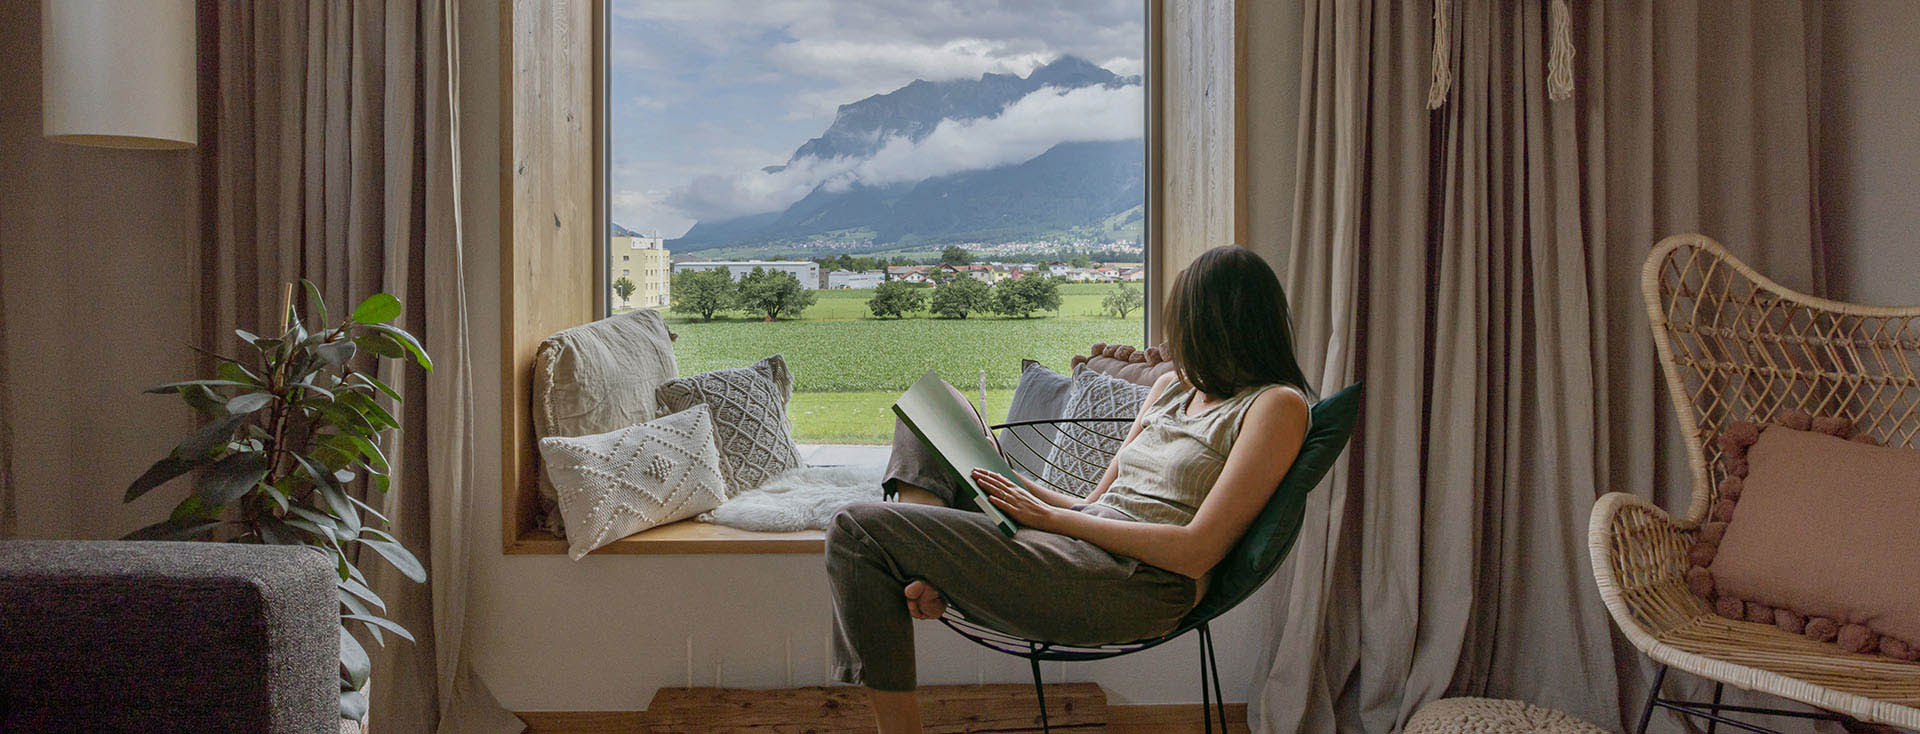  Eine Person liest entspannt in einem Stuhl sitzend ein Buch, mit Blick auf eine idyllische Landschaft mit Bergen und grünem Feld durch ein großes Fenster.